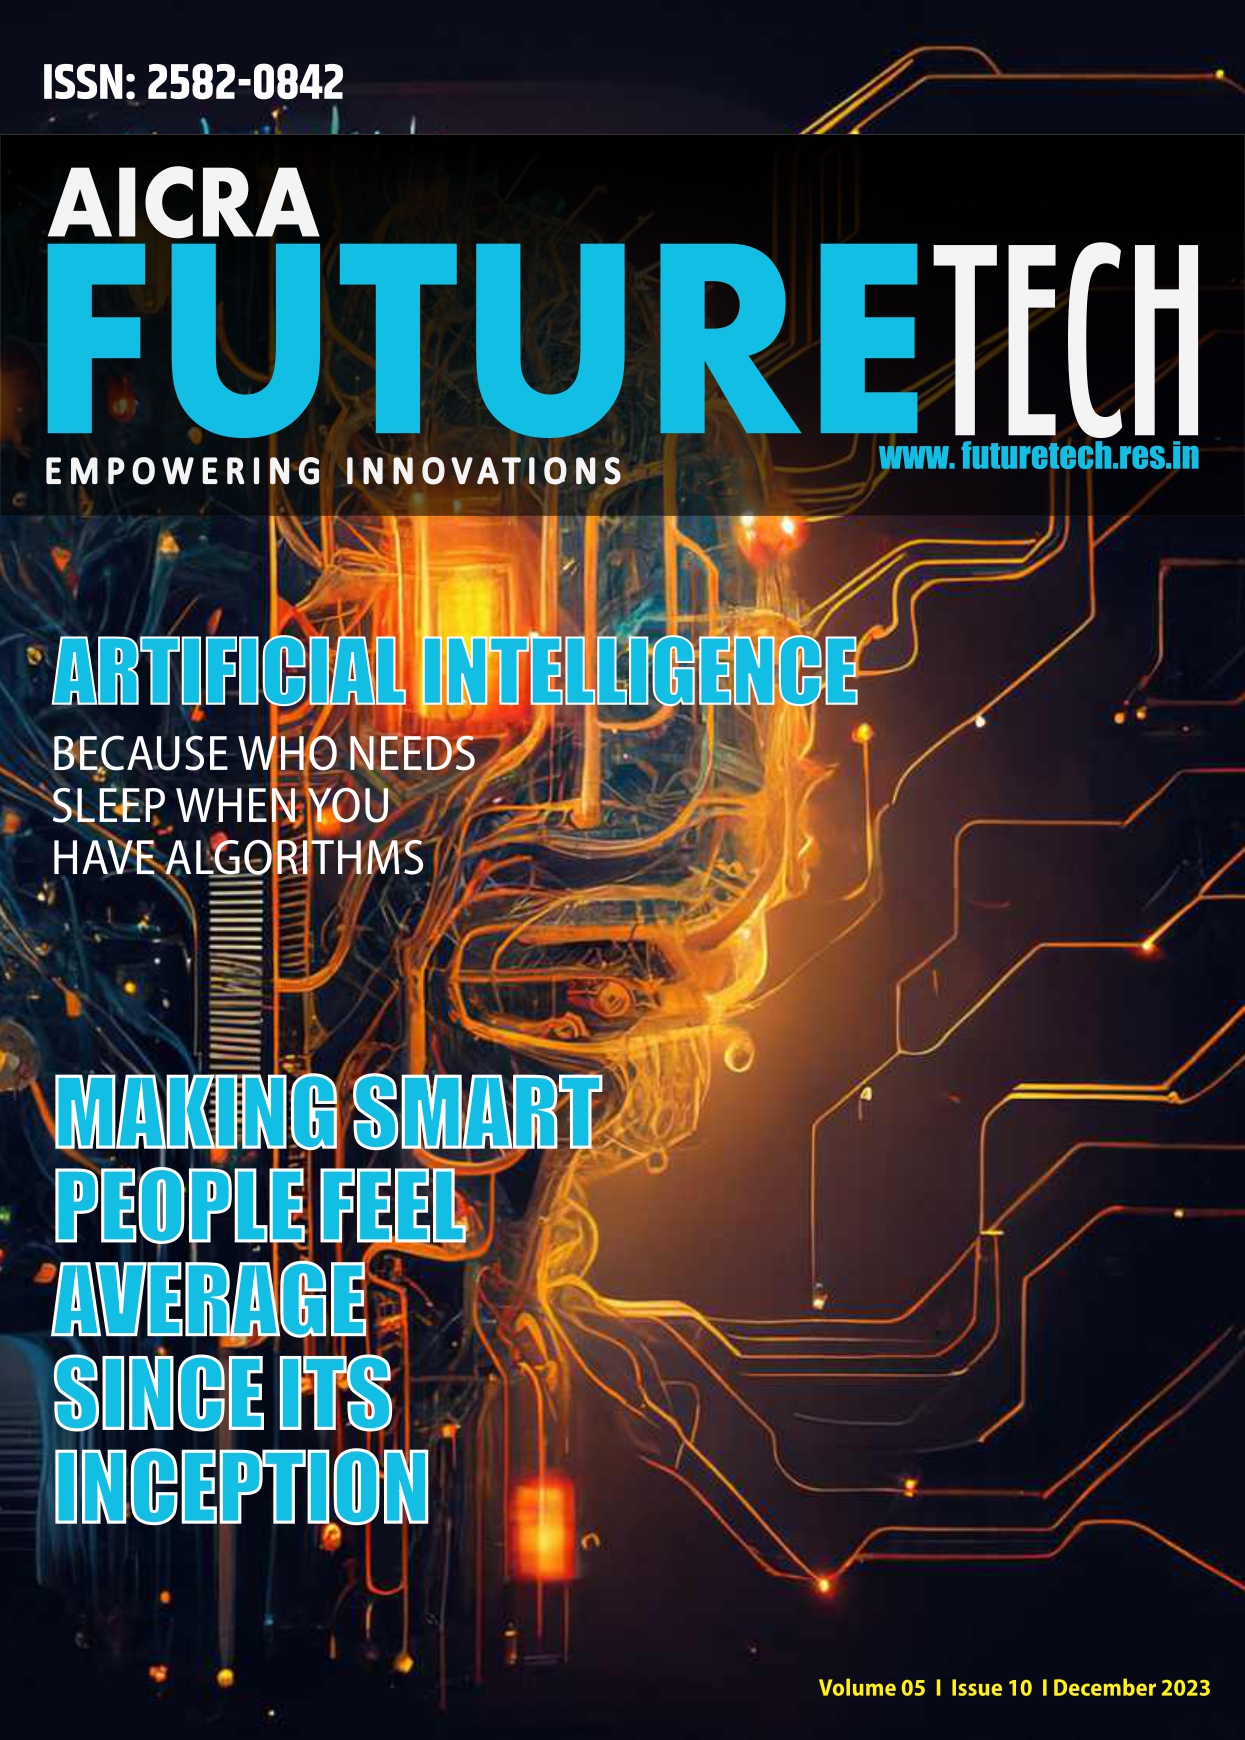 Futuretech Media Magazine